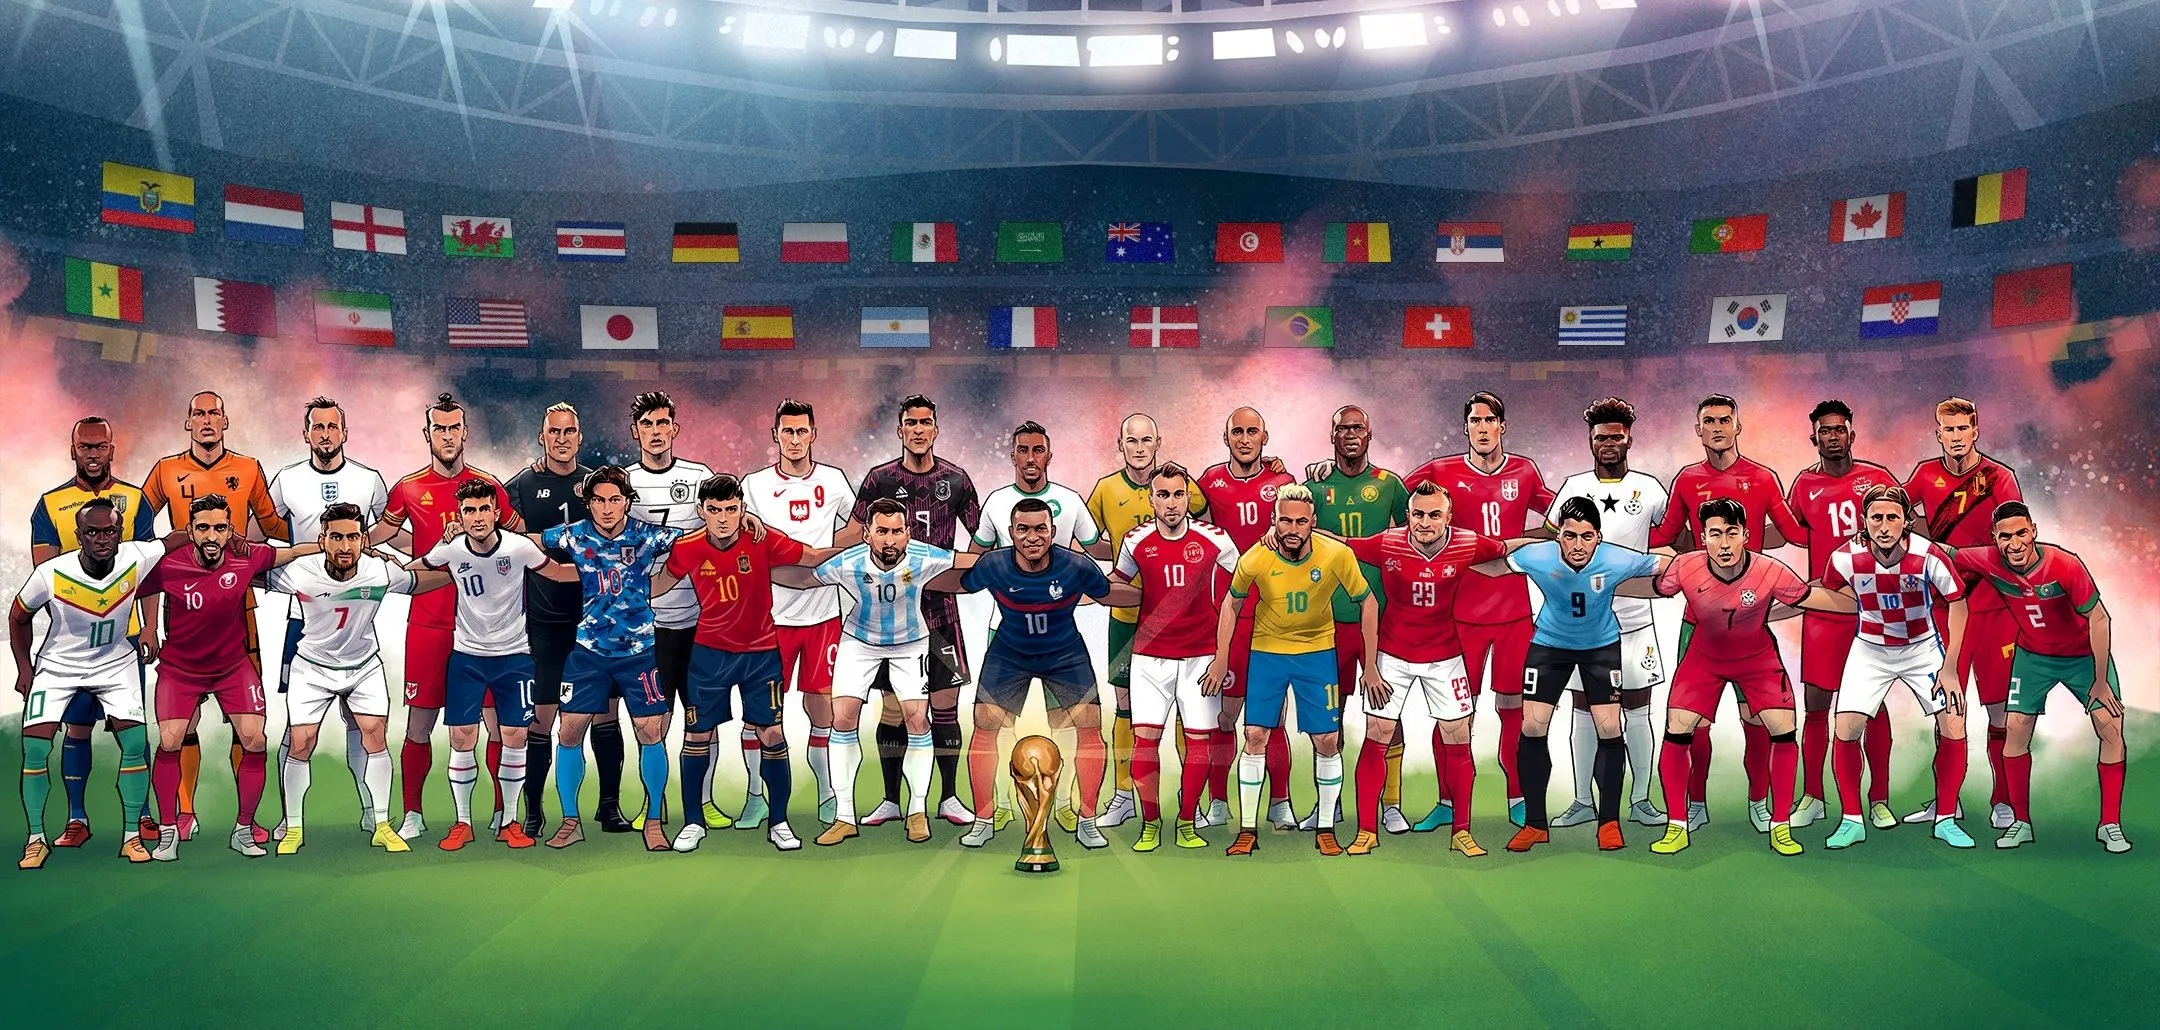 विश्वकप फुटबल २०२२ का हेभिवेट नाममा को-को ?, कुन महादेशबाट कति देश छानिए ?